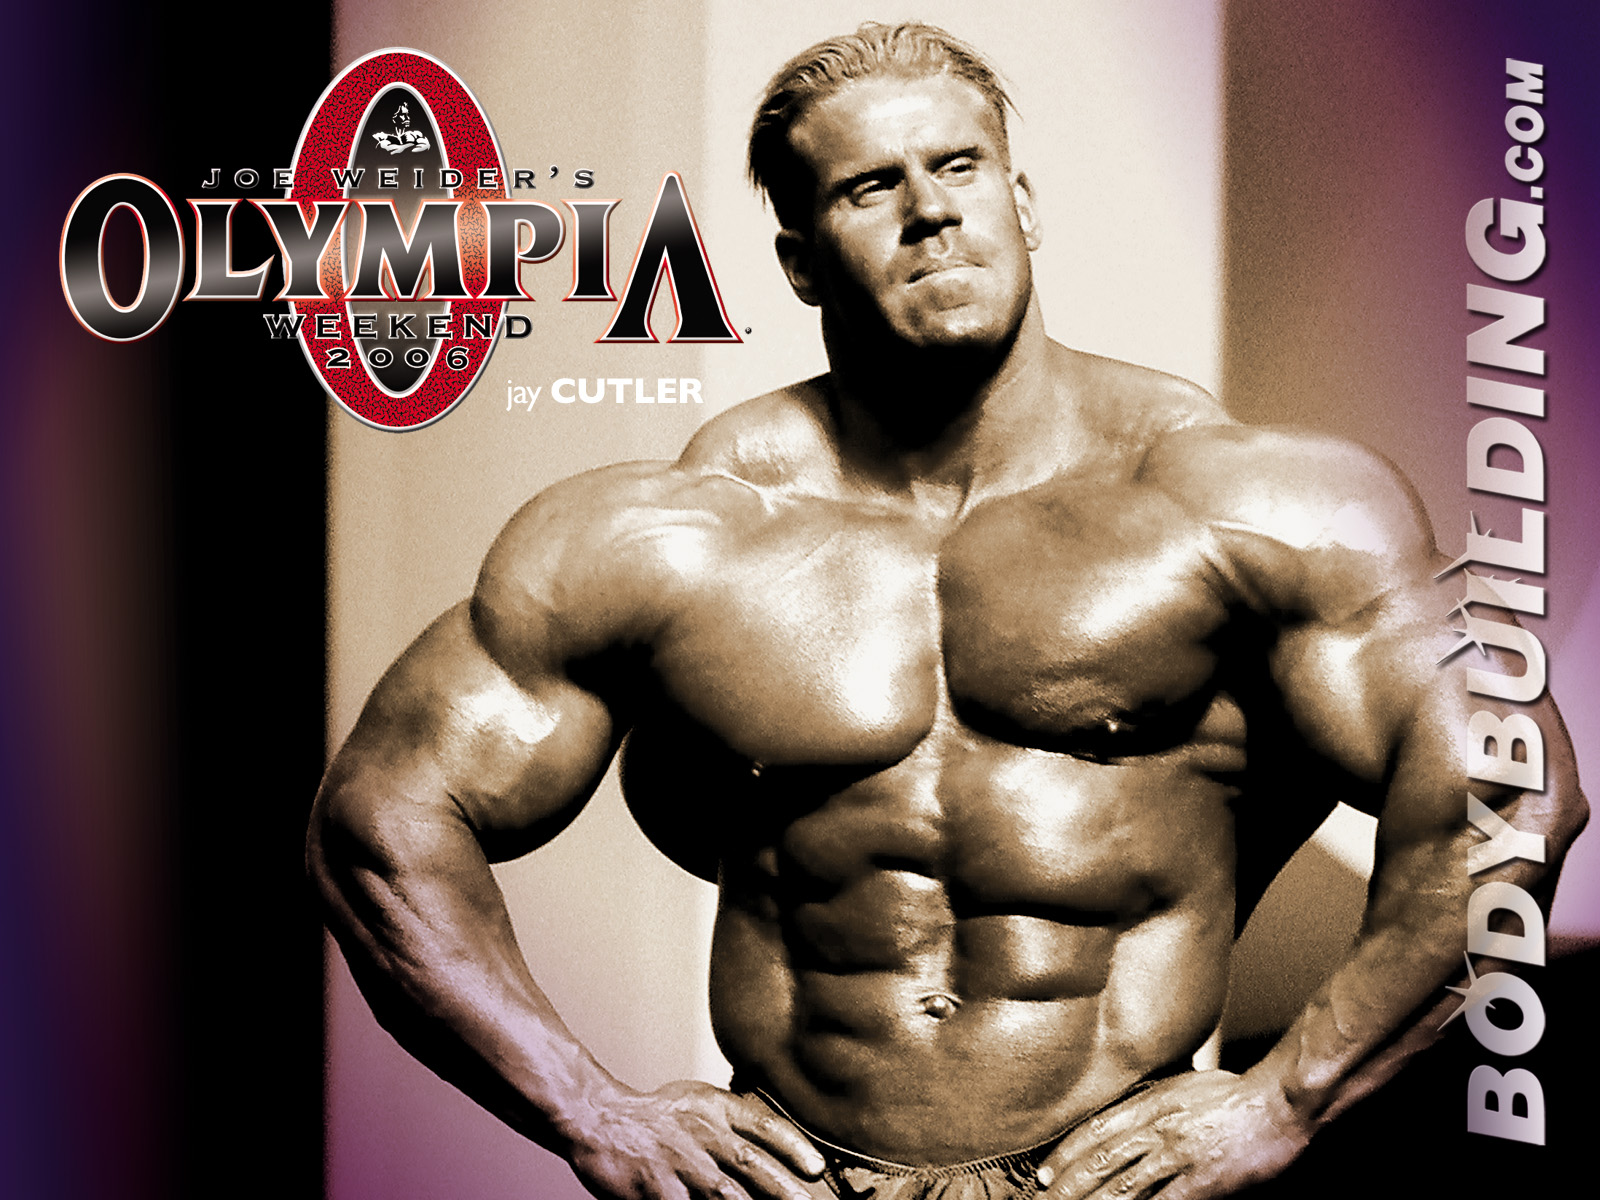 High Quality Jay Cutler Olympia Body